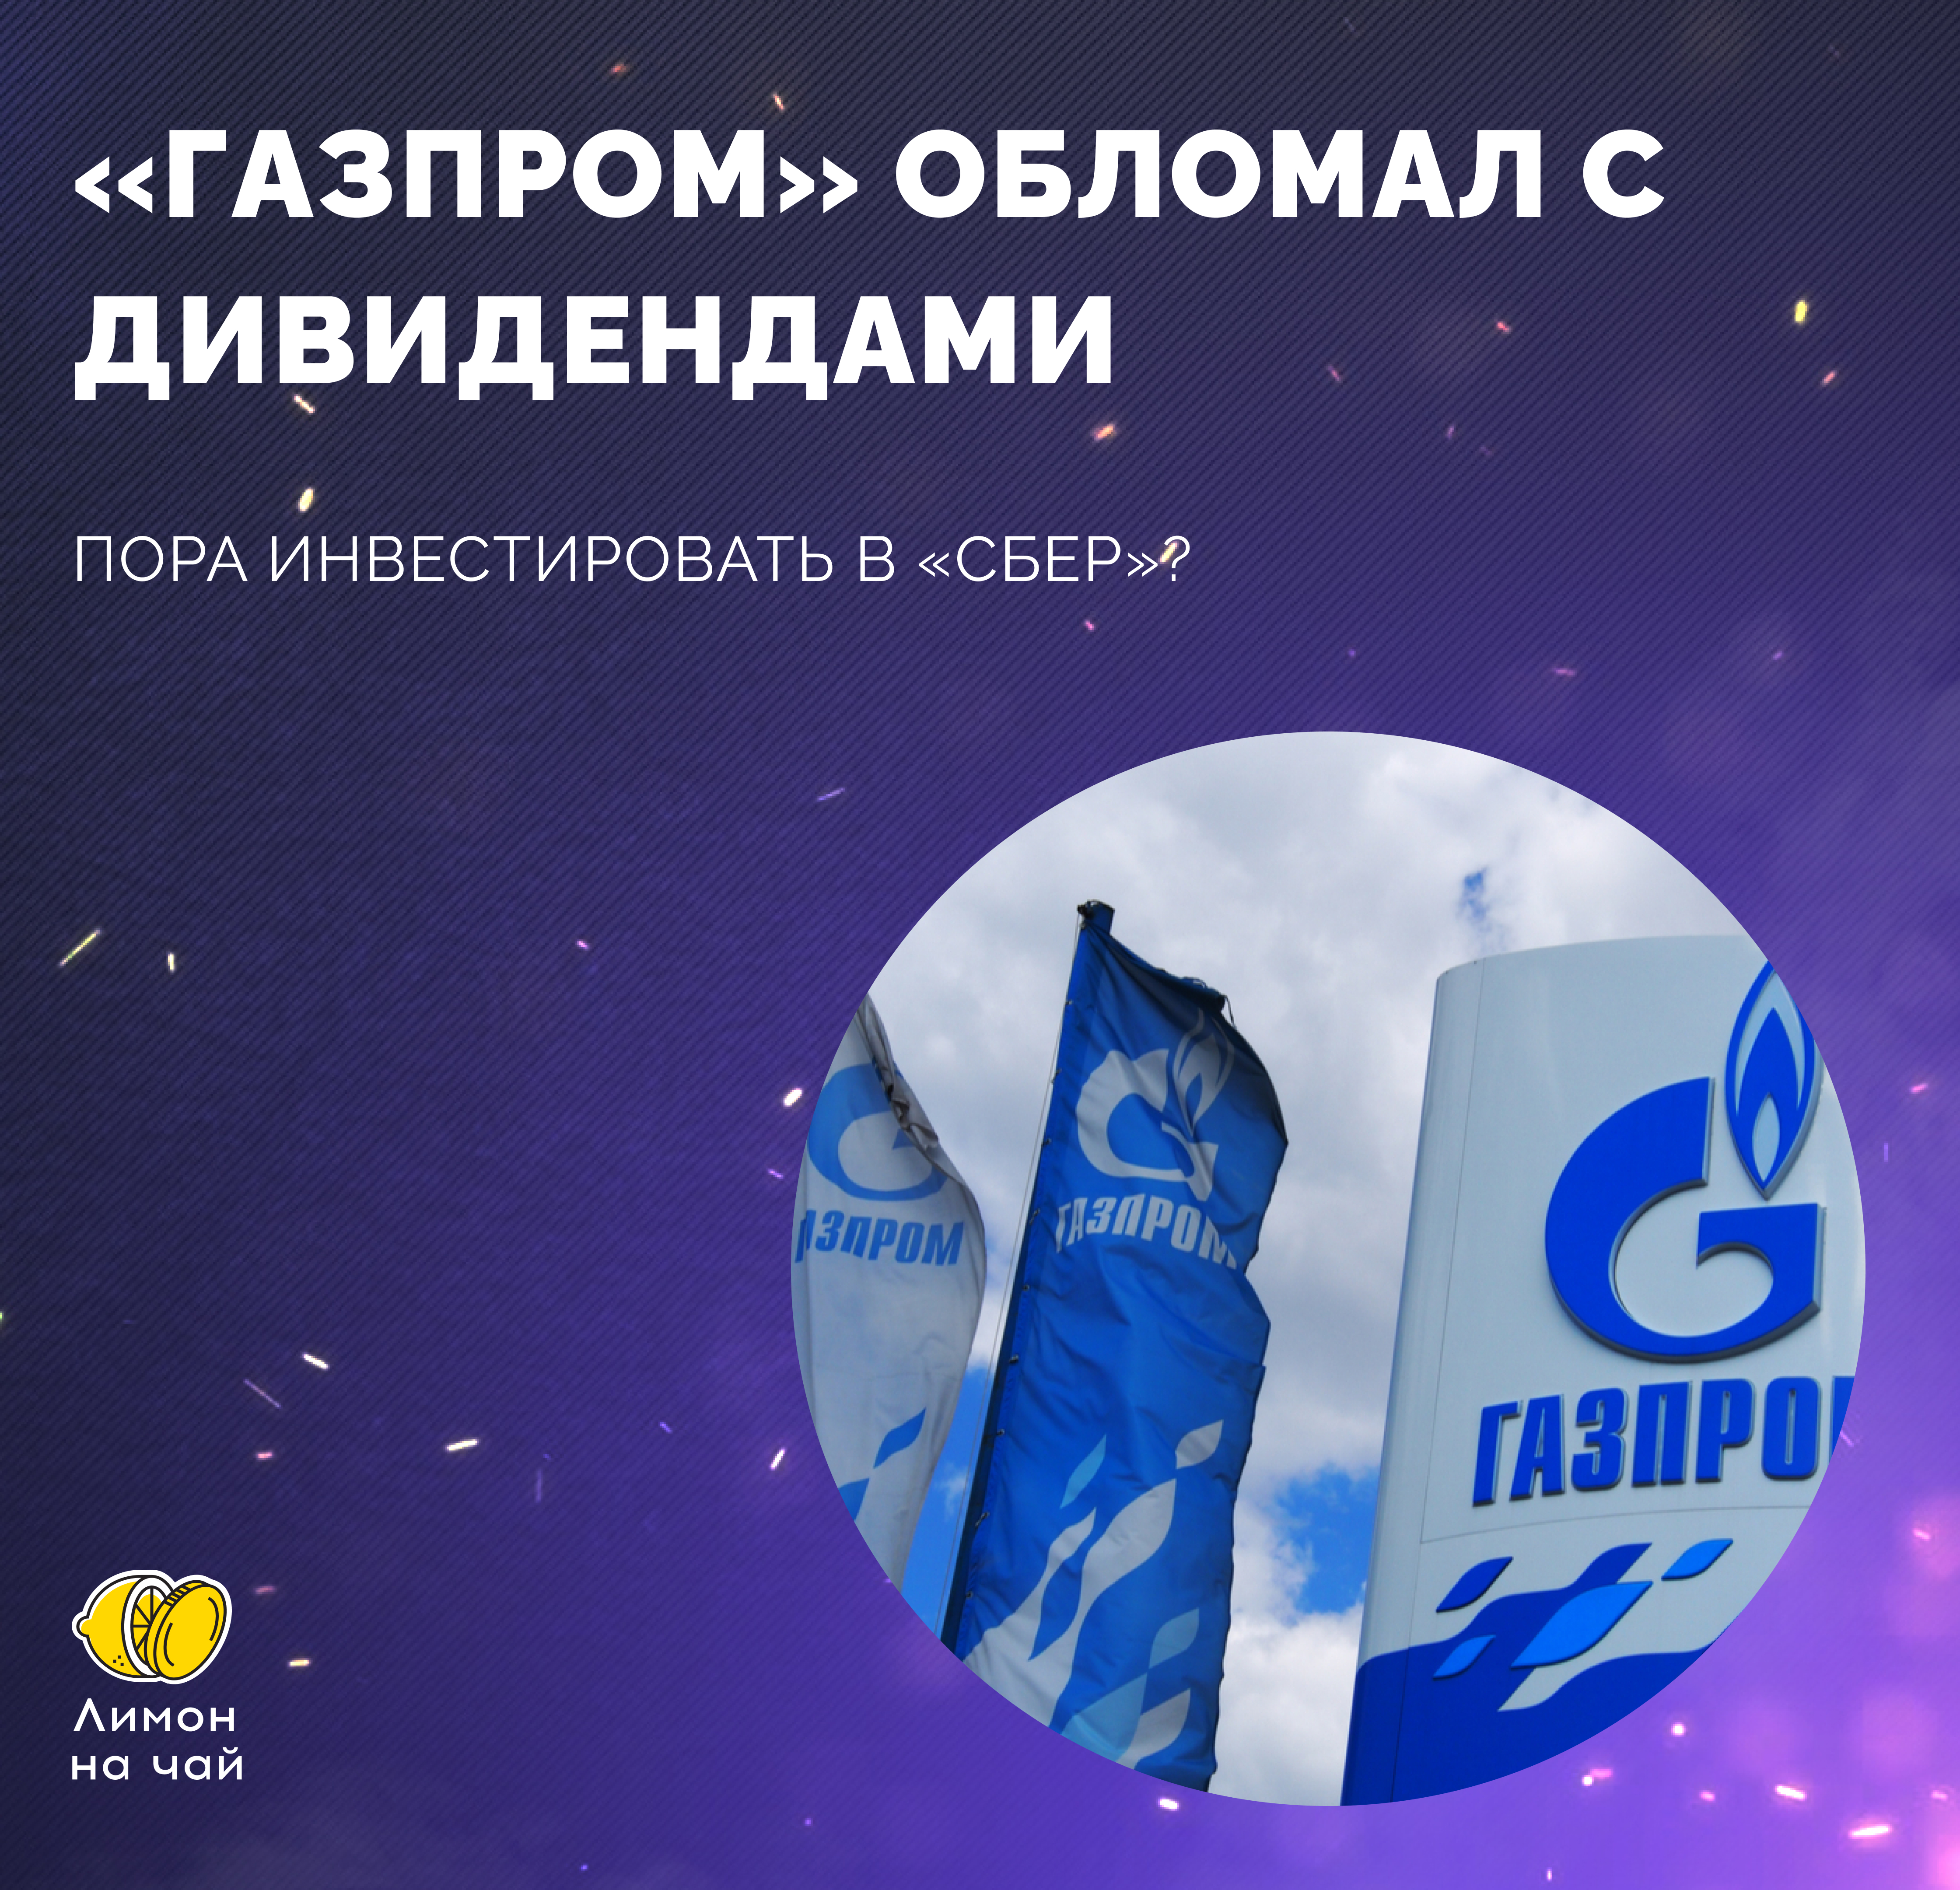 Ну что, перекладываемся в «Сбер» вместо «Газпрома»?